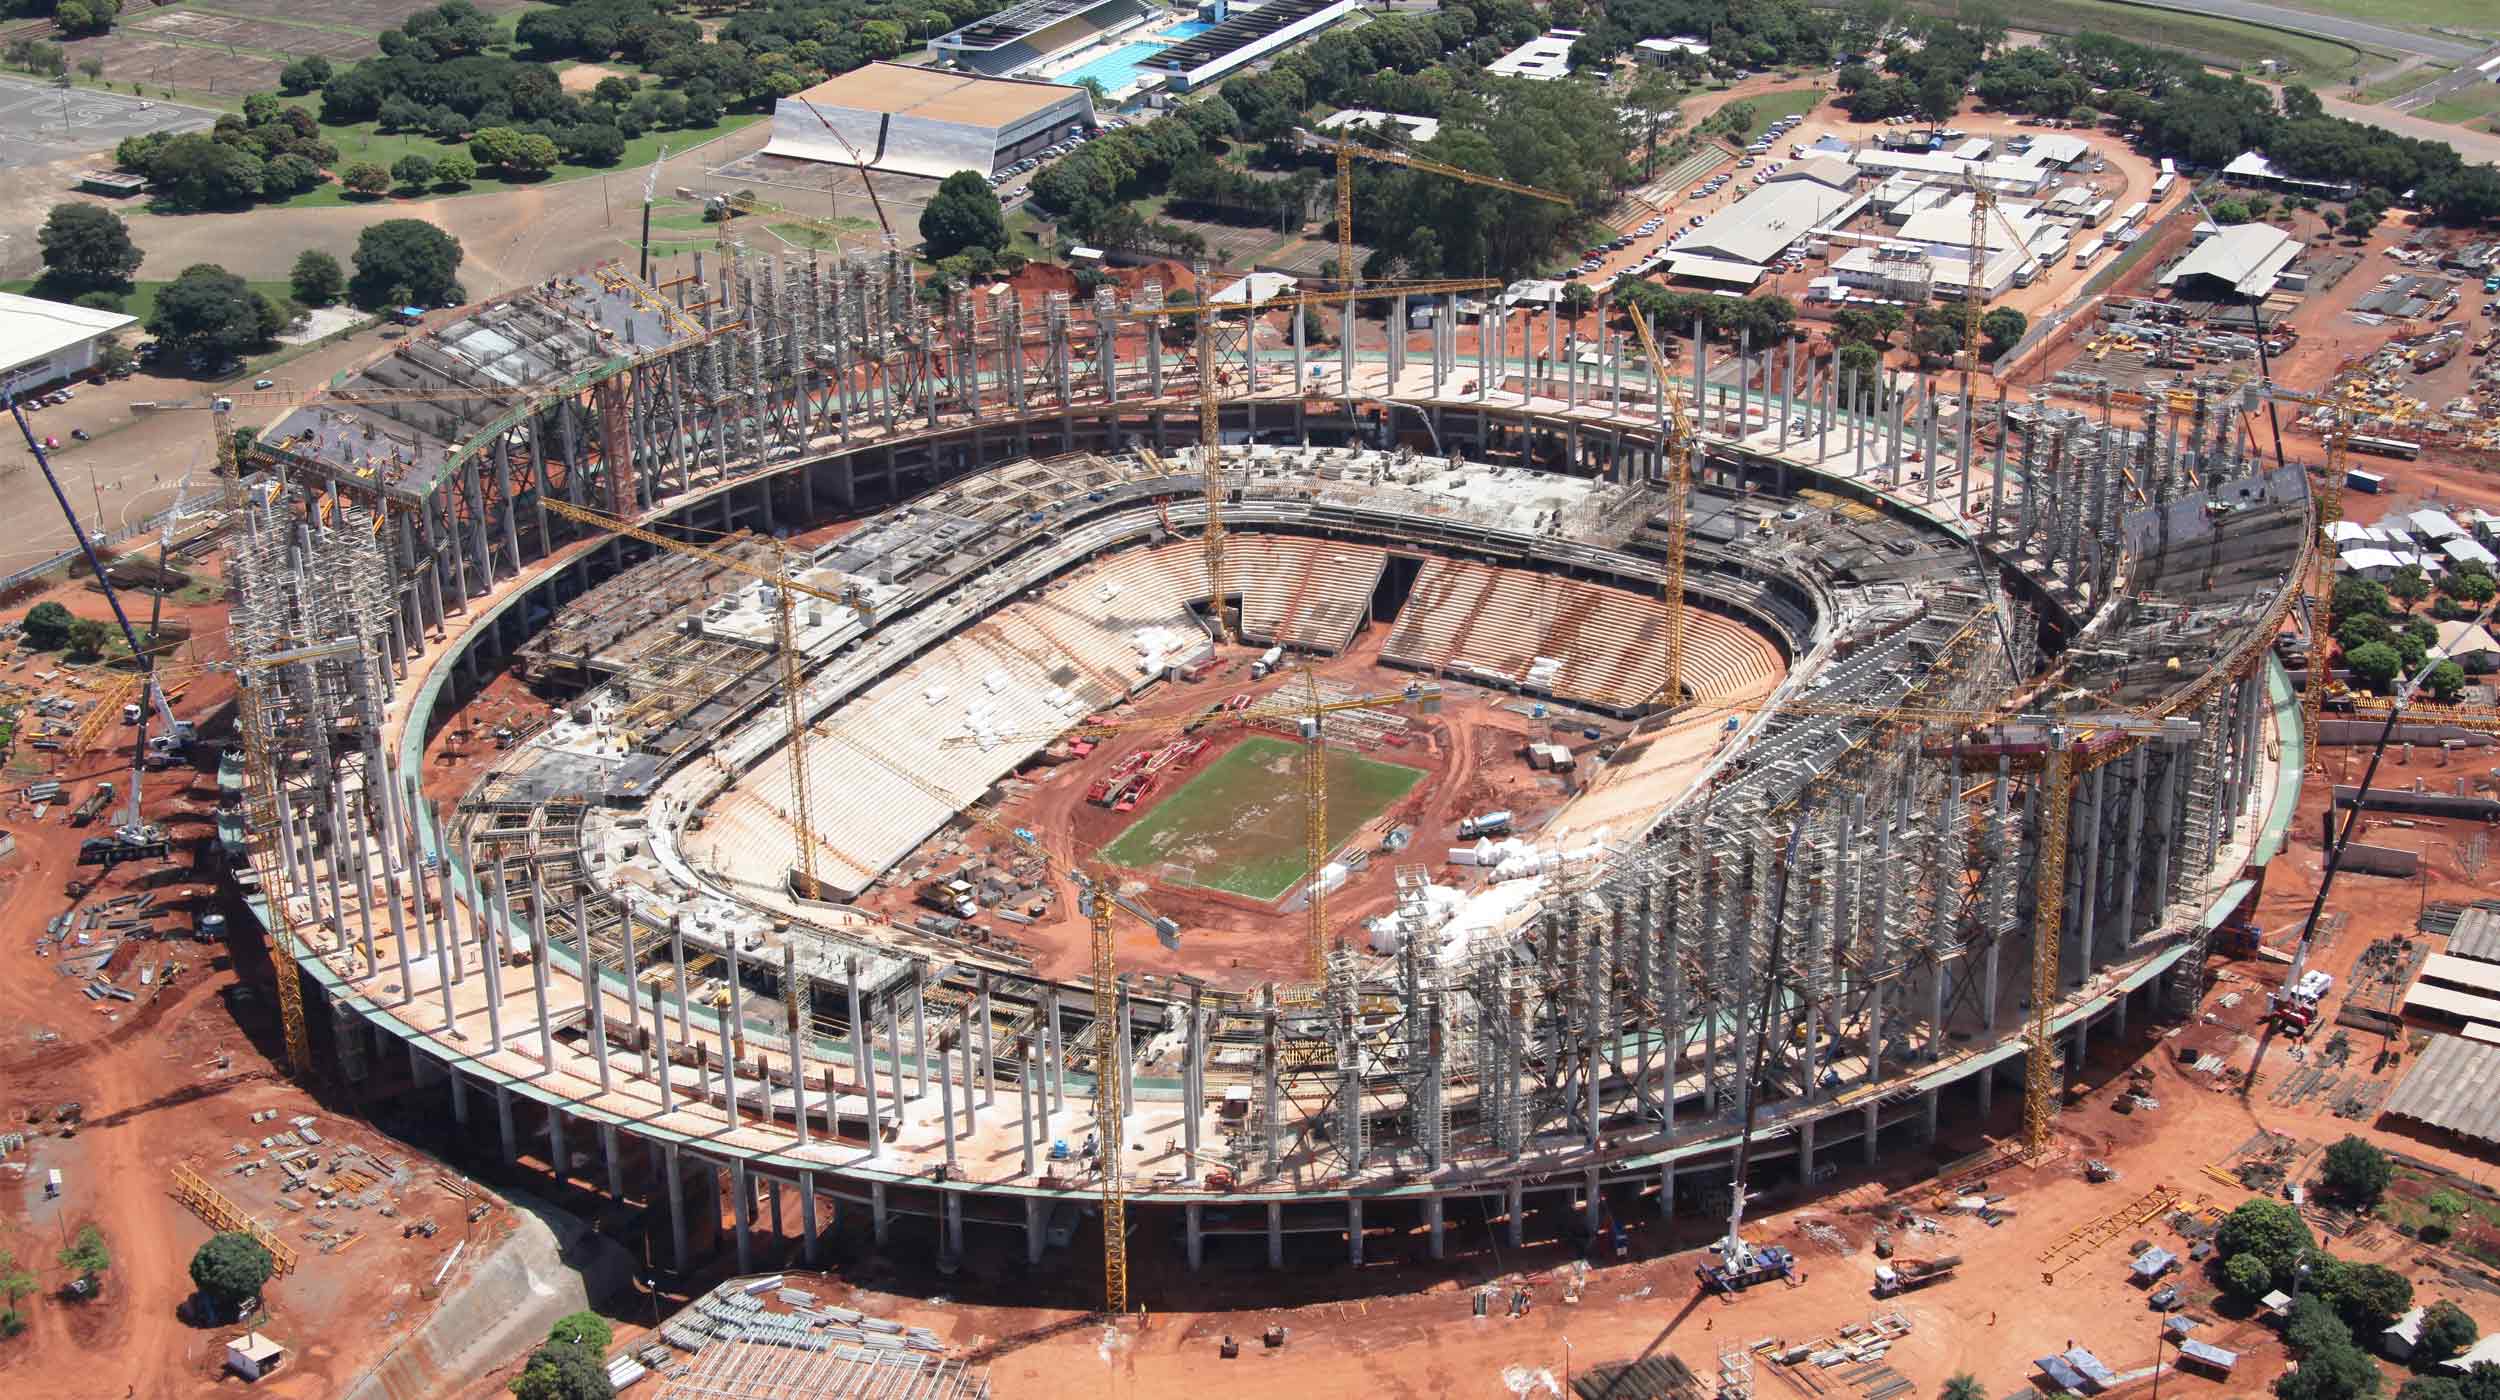 Besser bekannt als Mane Garrincha, wird es eine der Hauptaustragungsstätten der Fußball-Weltmeisterschaft 2014.